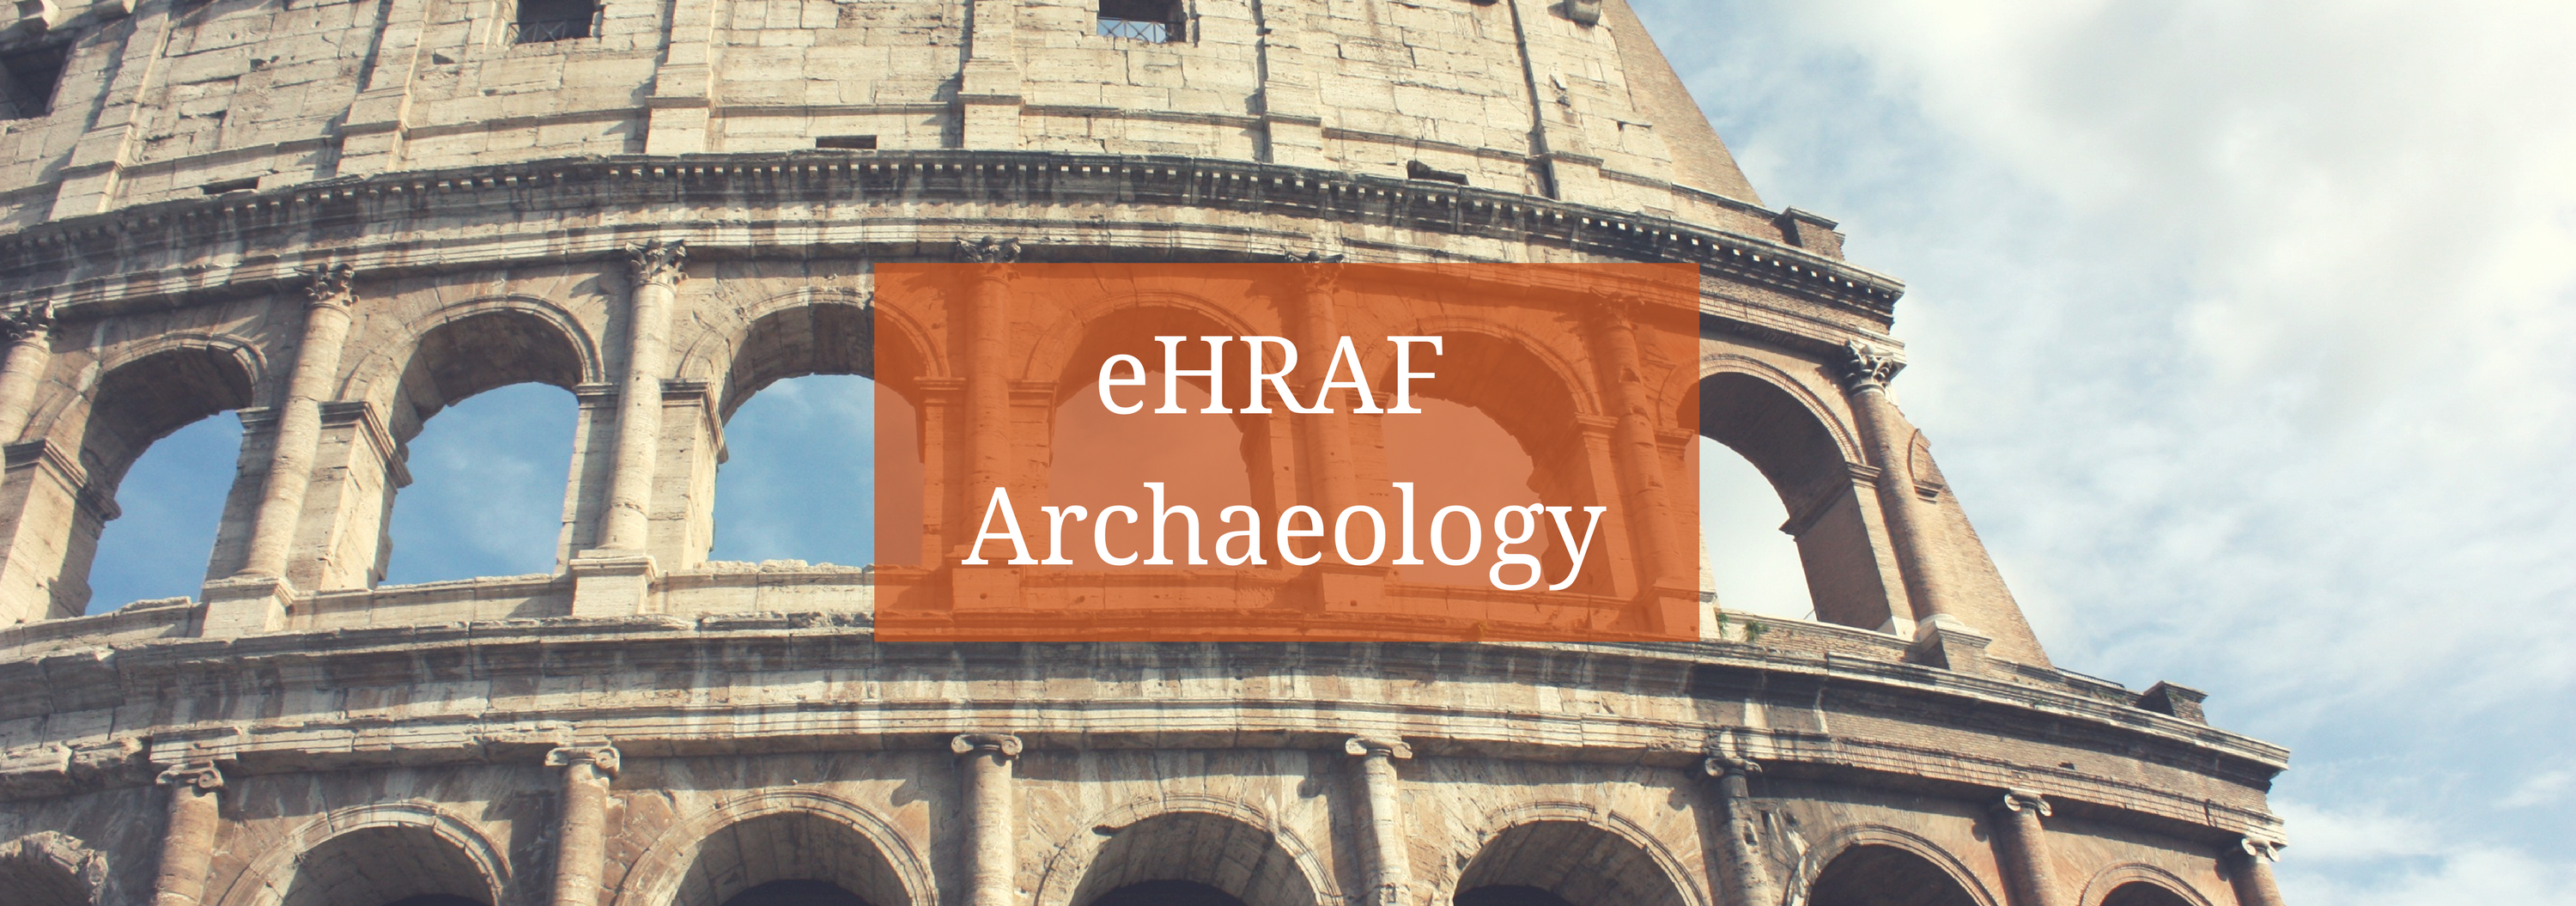 eHRAF Archaeology